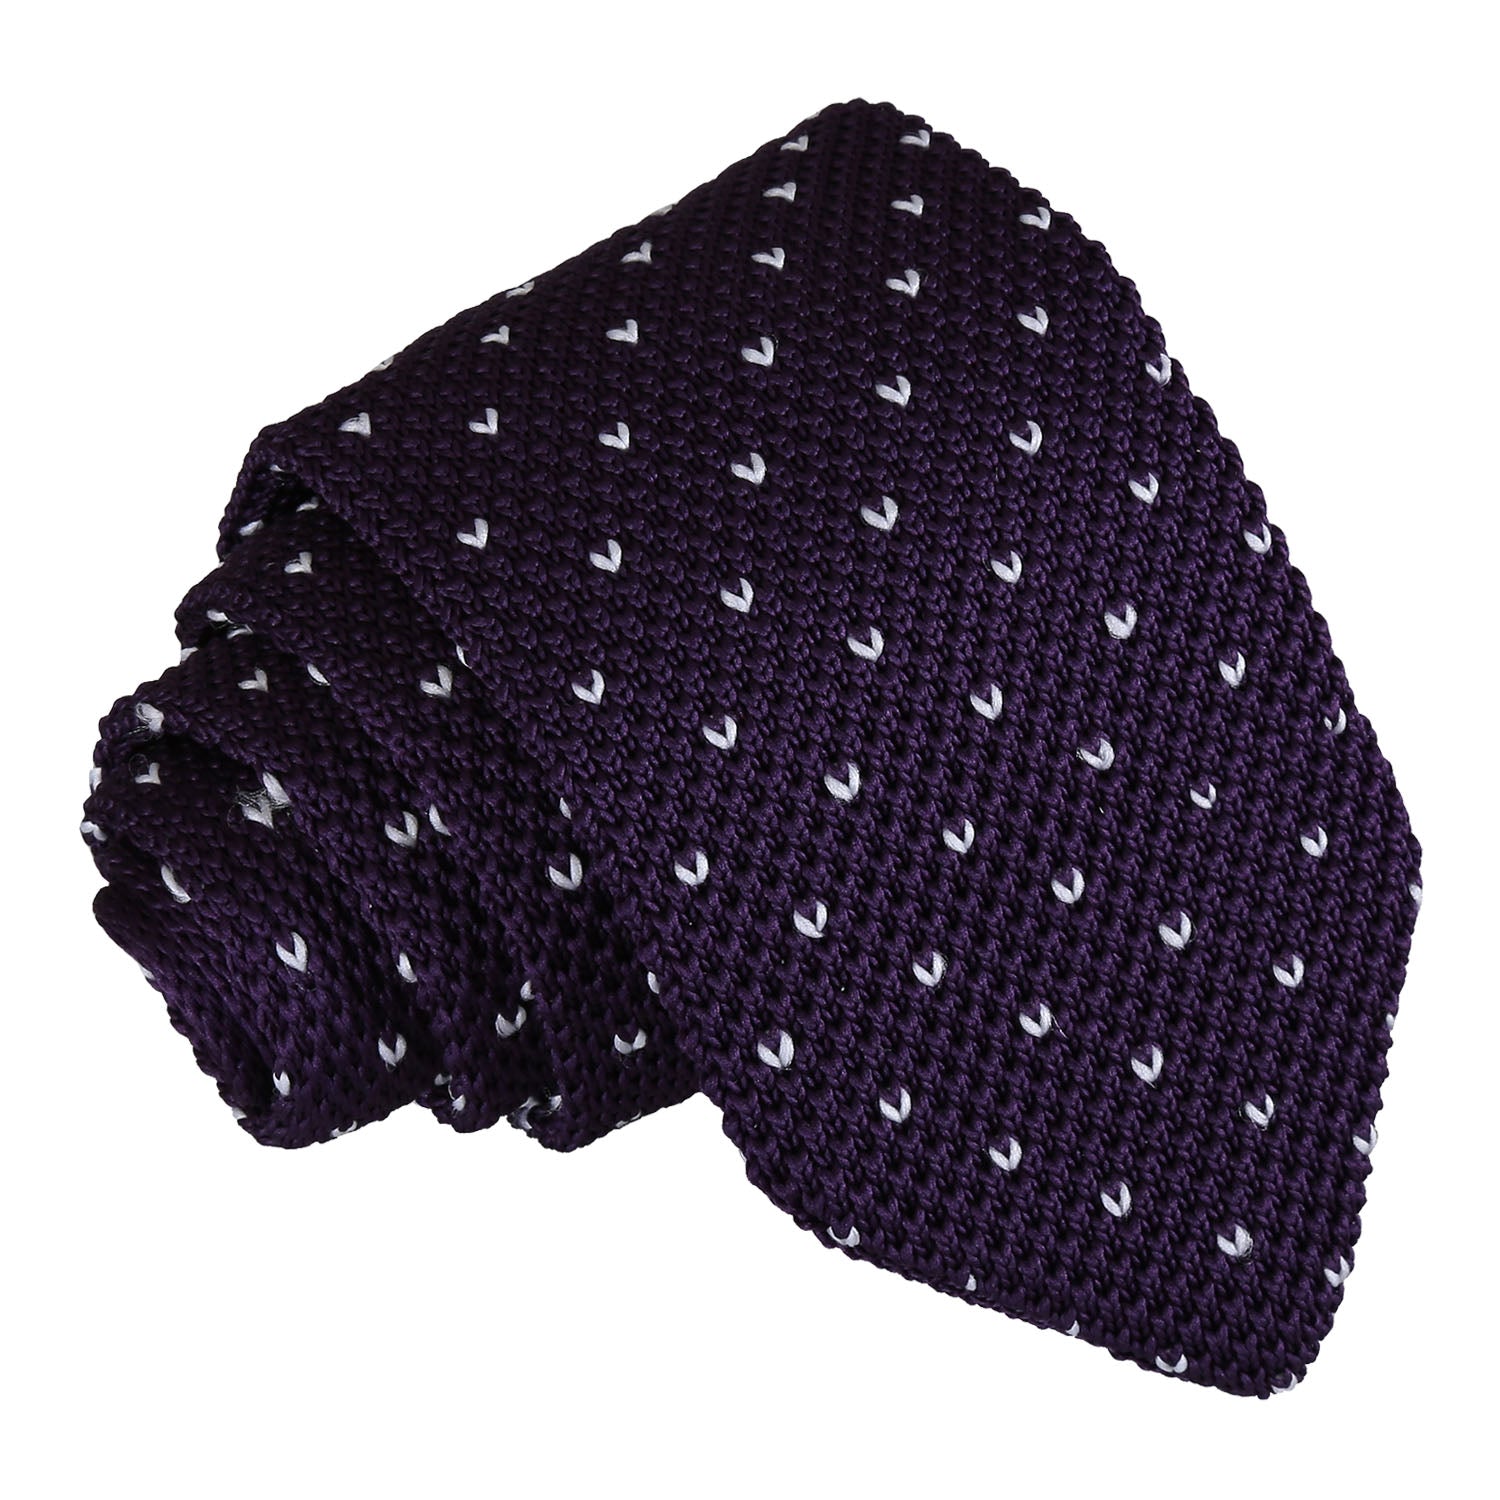 Flecked V Polka Dot Knitted Slim Tie - Burgundy - Well Dapper